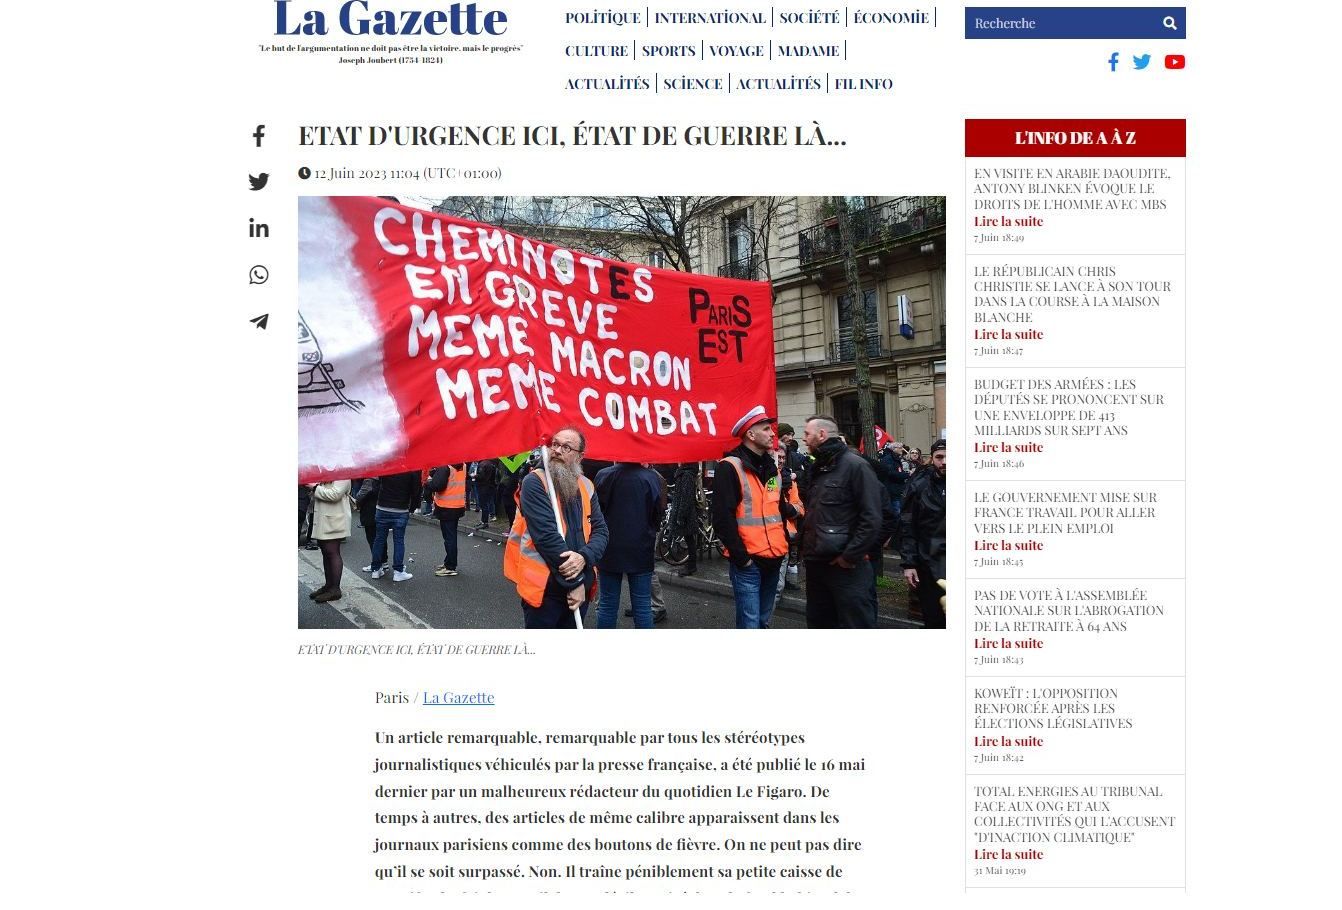 Französische La Gazette reagiert scharf auf provokative Veröffentlichung in der Zeitung Le Figaro